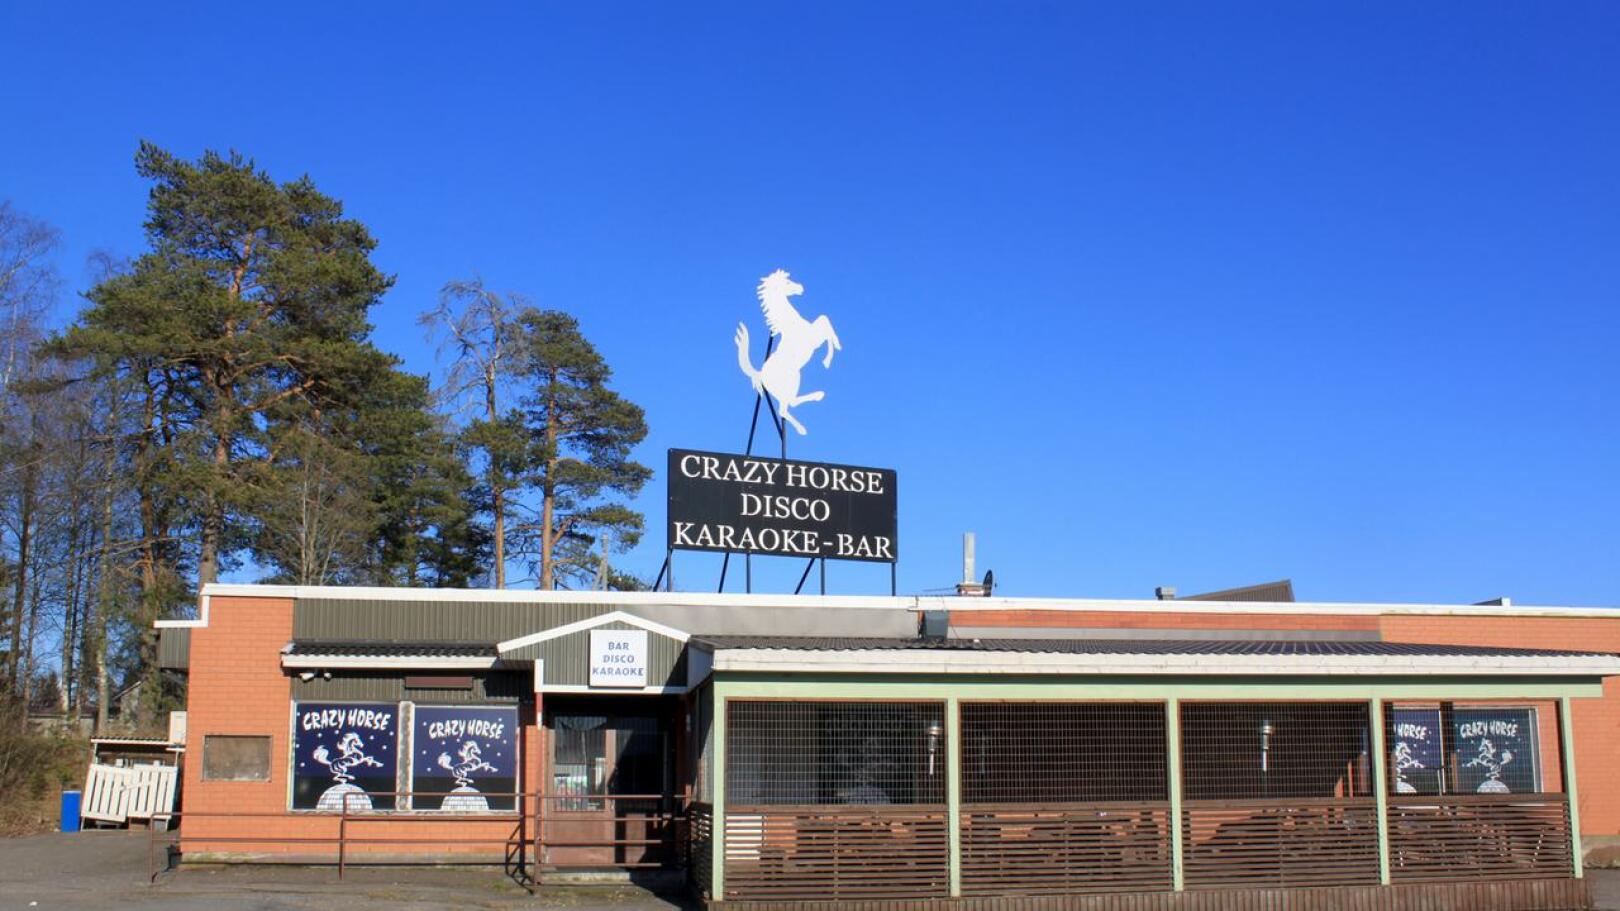 Perhossa toimiva Crazy Horse -yökerho ei pysty avaamaan oviaan kesäkuun alussa. Hallituksen linjaama sulkemisajankohta on liian aikainen yritykselle.